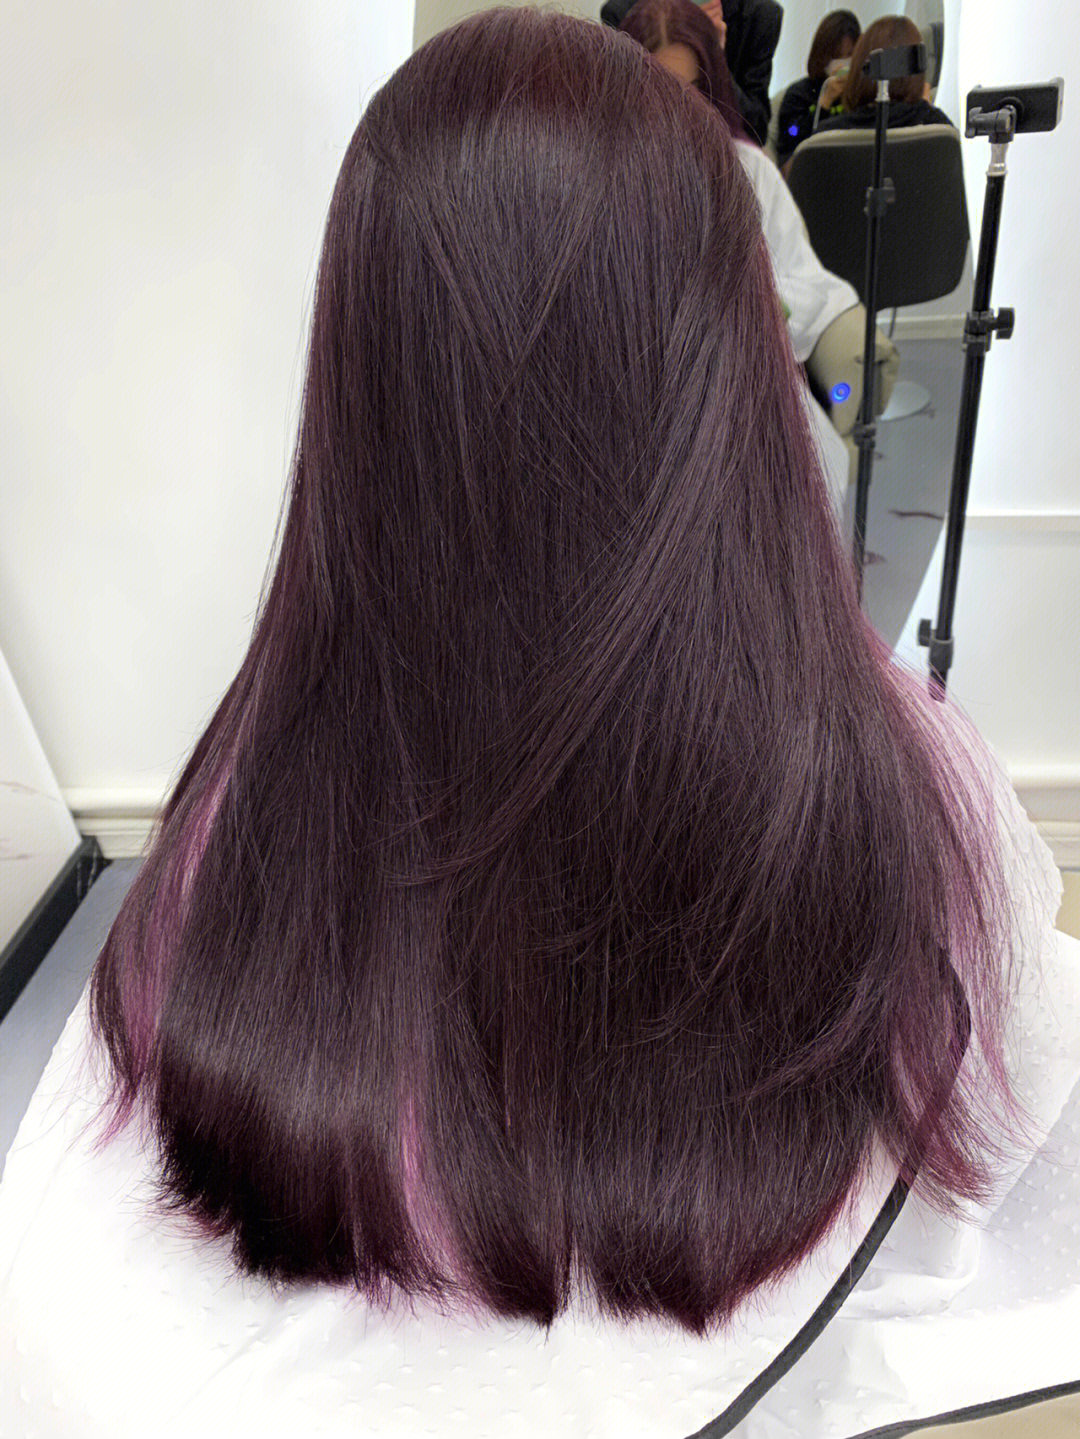 人间紫葡萄呢78超级好看的葡萄紫色啦～～91心动整个秋冬紫色头发